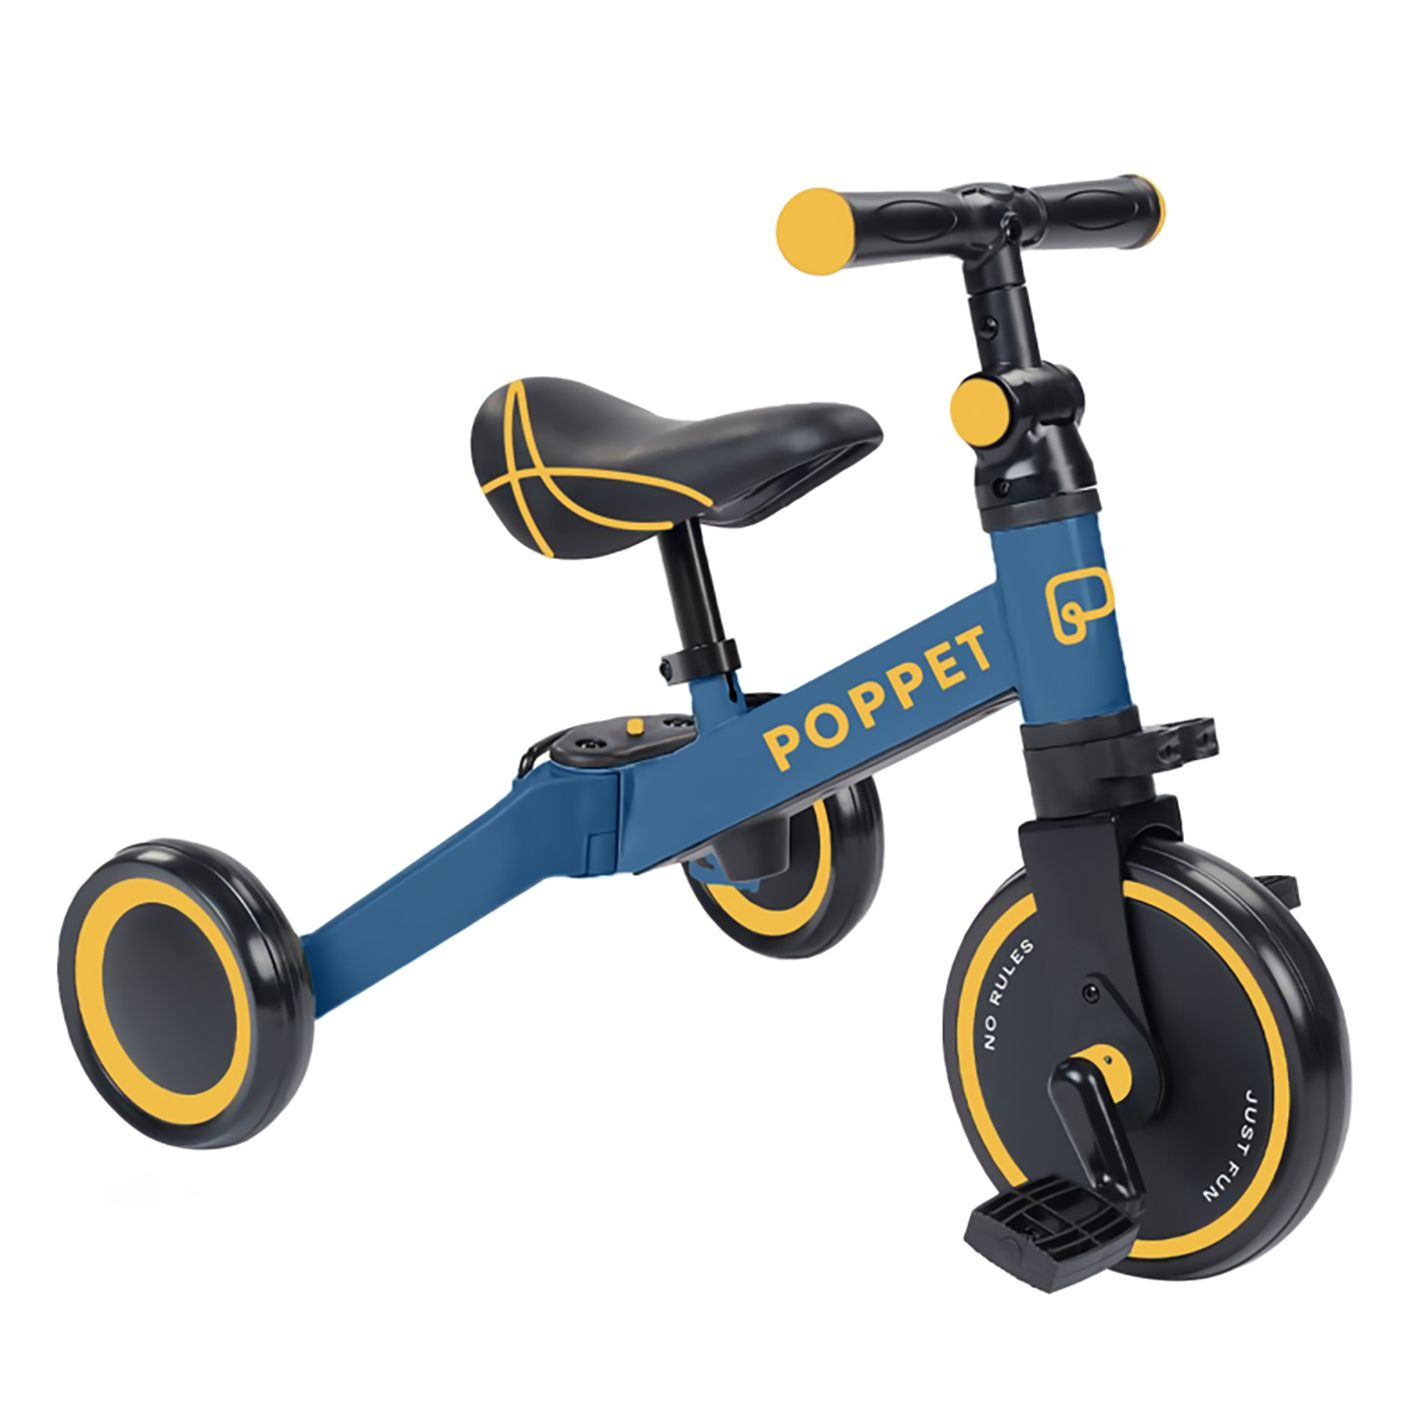 

Дитячий триколісний біговел Poppet синьо-жовтий 3 в 1 (2040011)